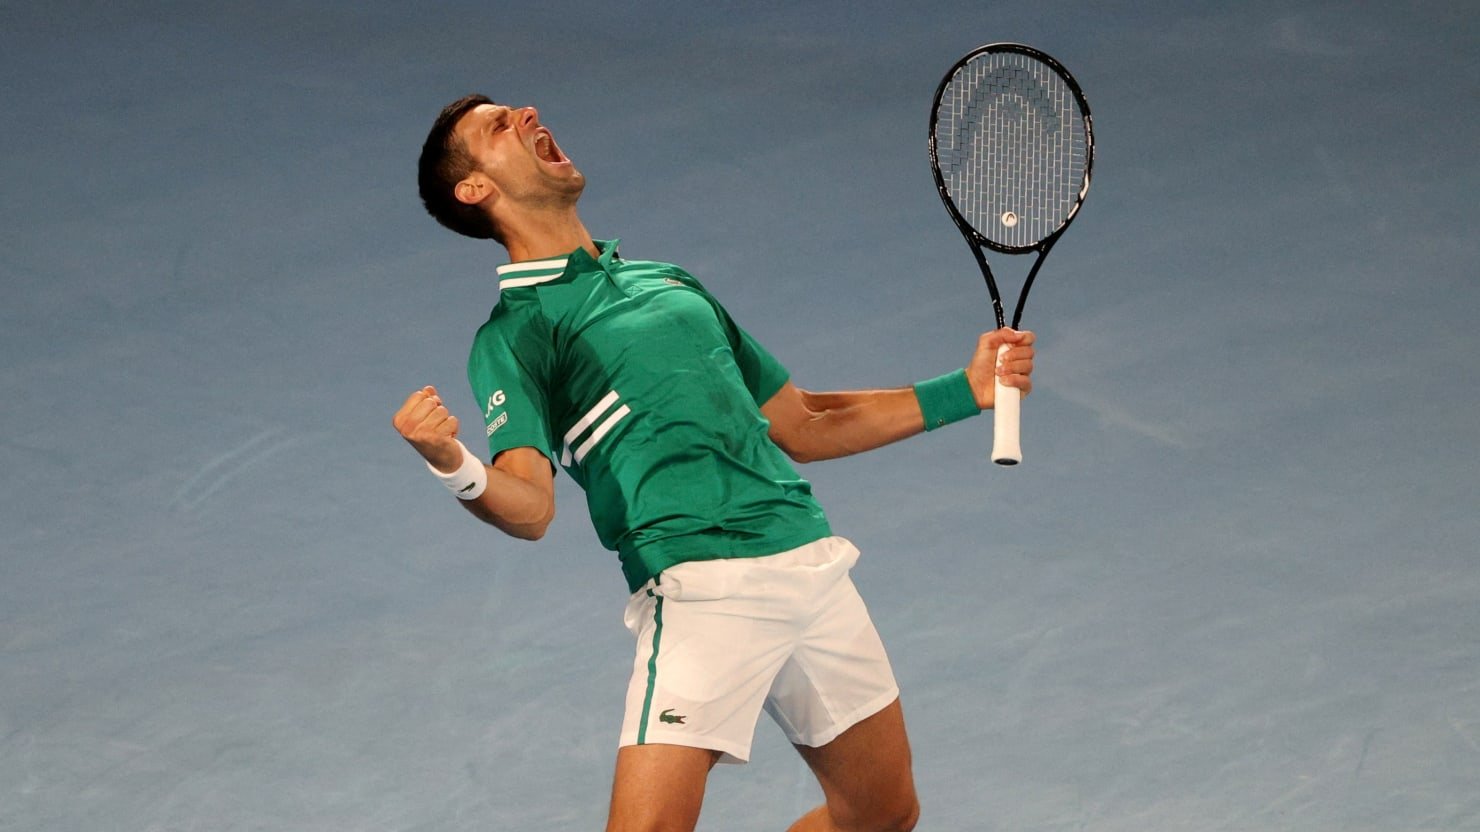 El juez australiano libera a Djokovic, que no se vacunó: “¿Qué más podría haber hecho este hombre?